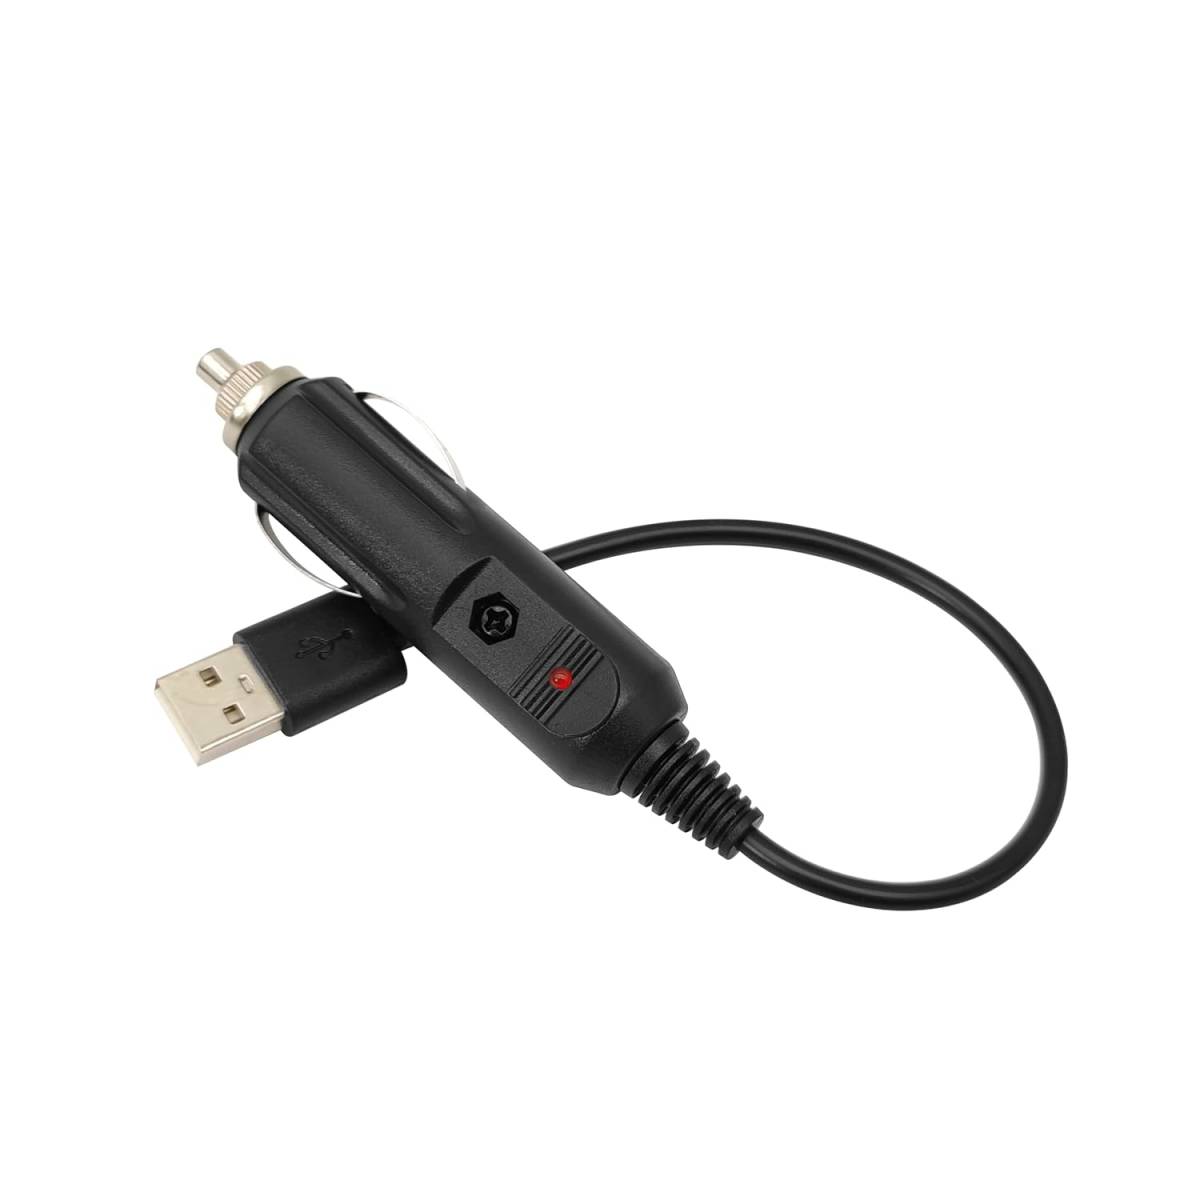 シガー ライター コネクタ、USB 電源供給 ZKTOOL メモリーバックアップ USB メモリーキーパー メモリセーバー シガレ_画像2